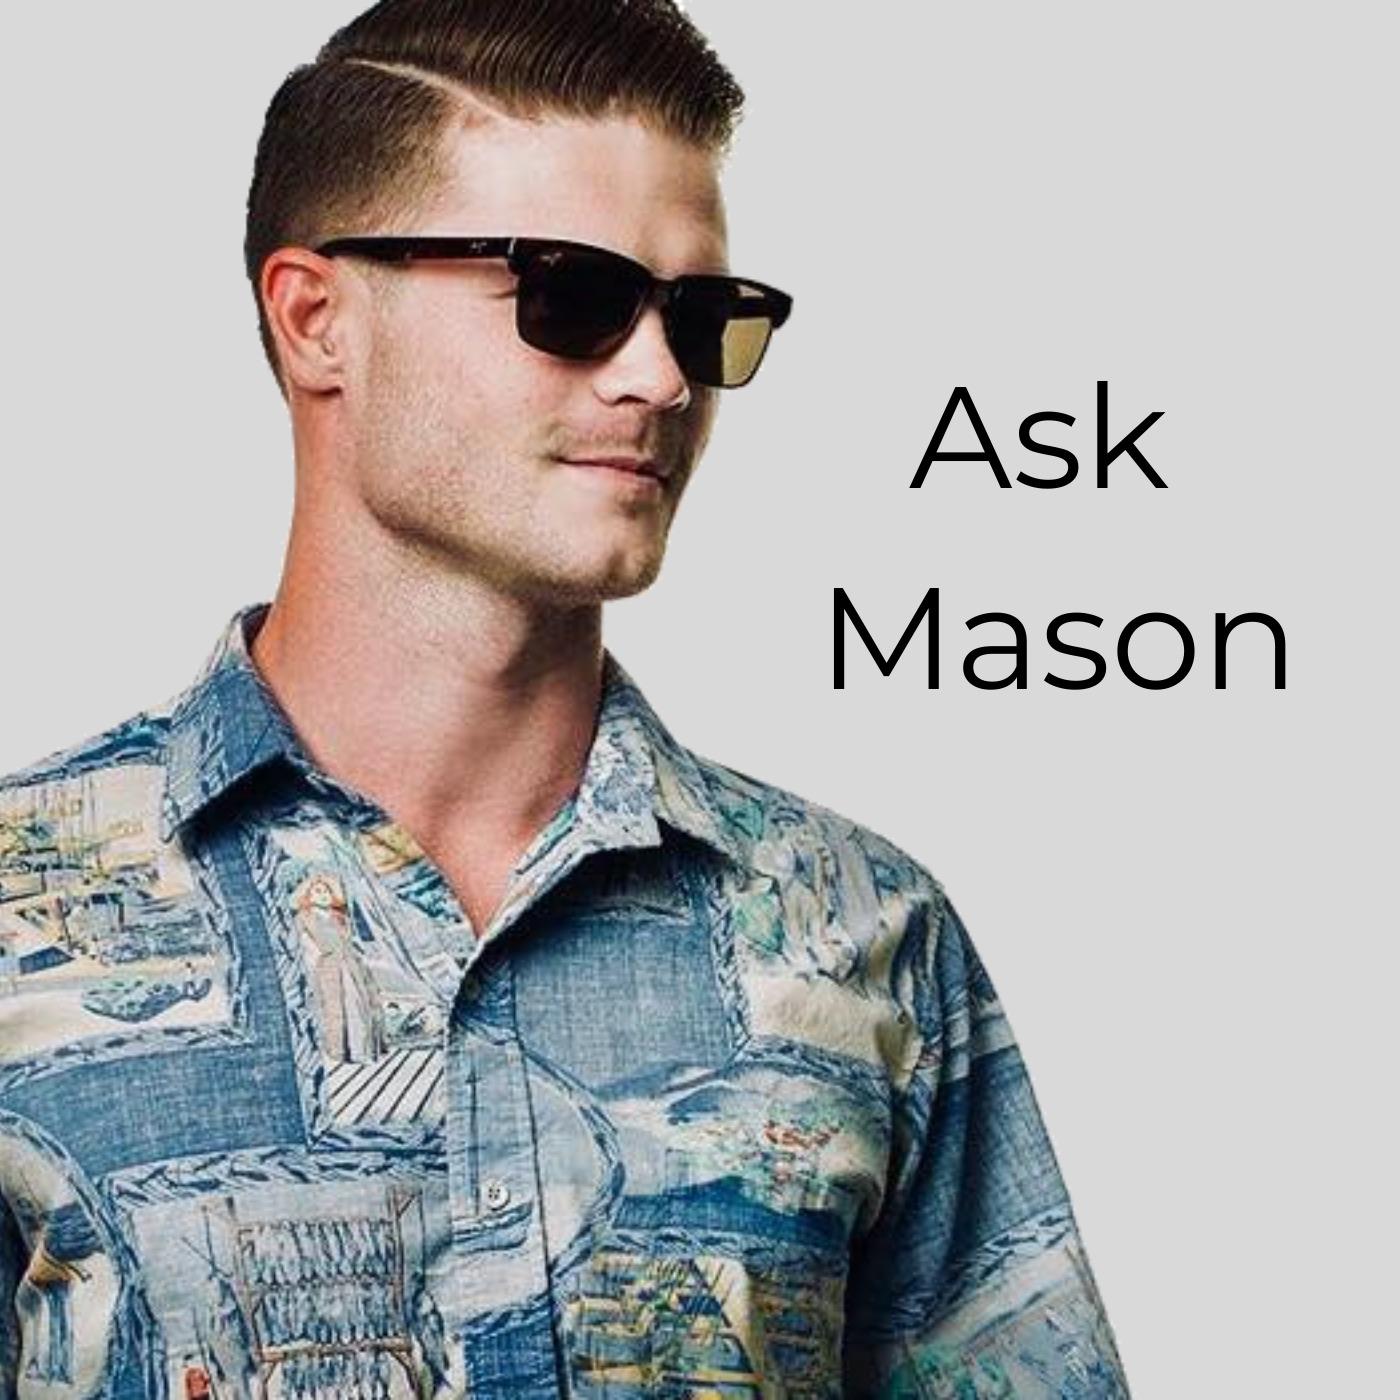 Ask Mason